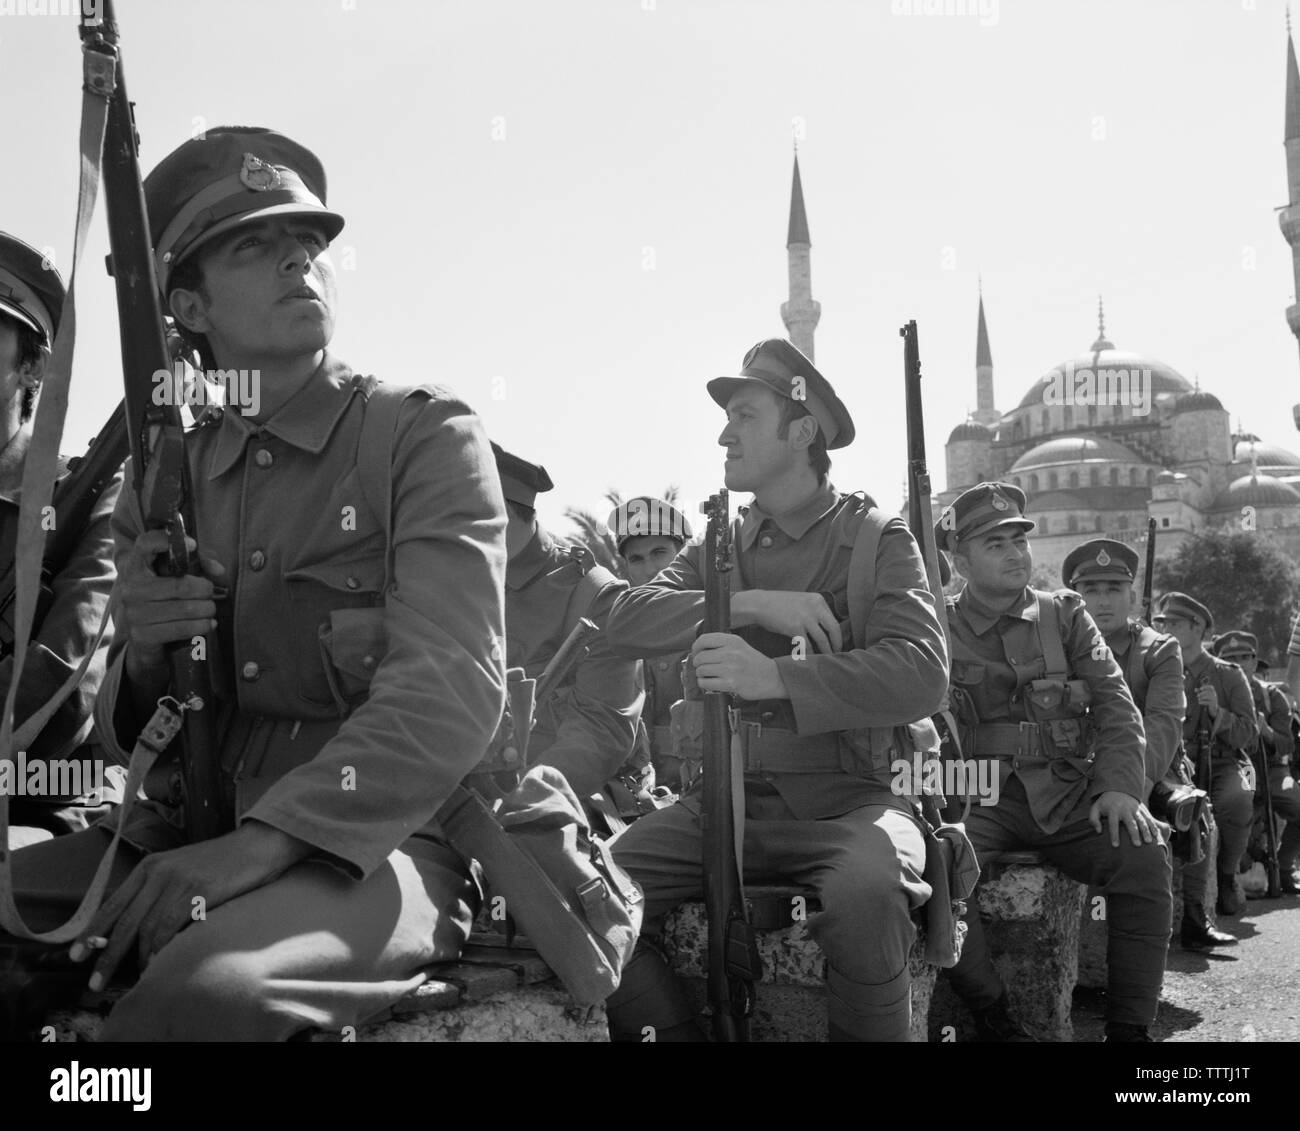 La Turquie, Istanbul, acteurs d'uniformes militaires, des canons à la mosquée dans l'arrière-plan (B&W) Banque D'Images